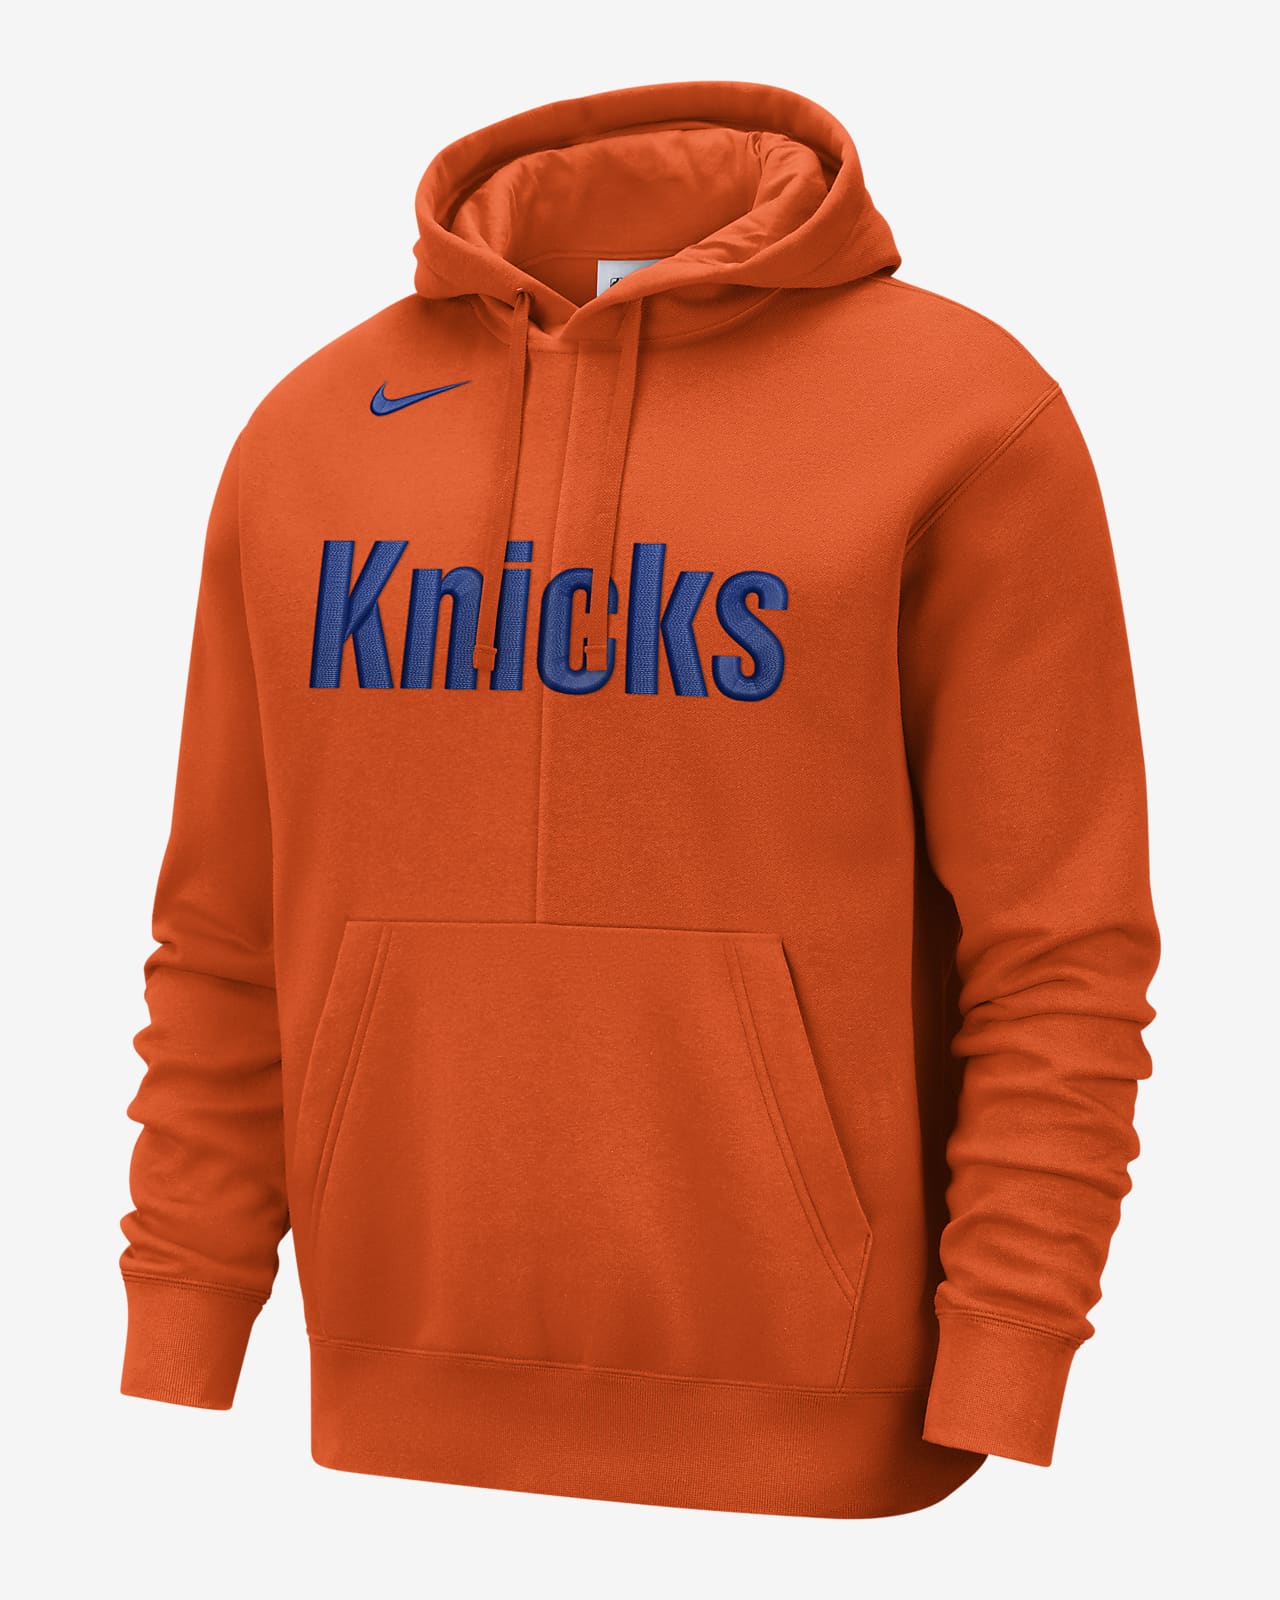 Sudadera gorro sin cierre de tejido Fleece Nike de la para hombre New Knicks Courtside. Nike.com